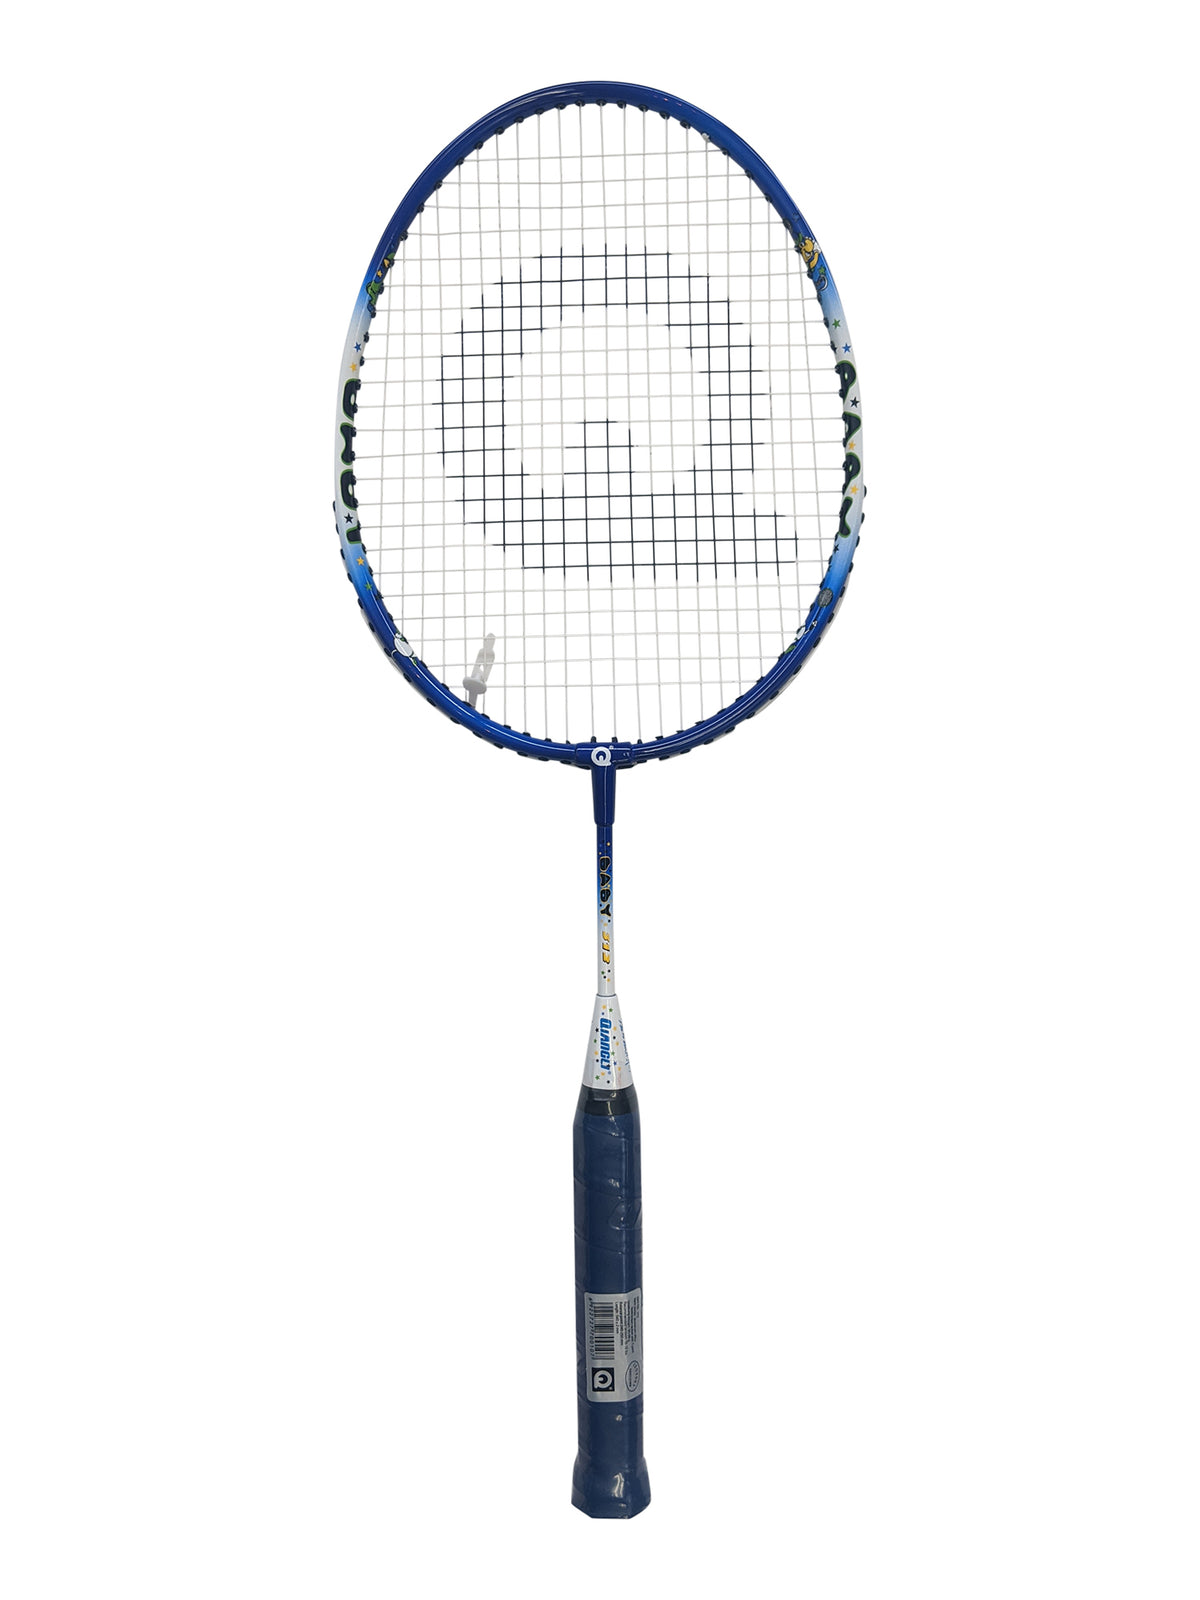 Qiangli A312 Junior aluminum badminton racket